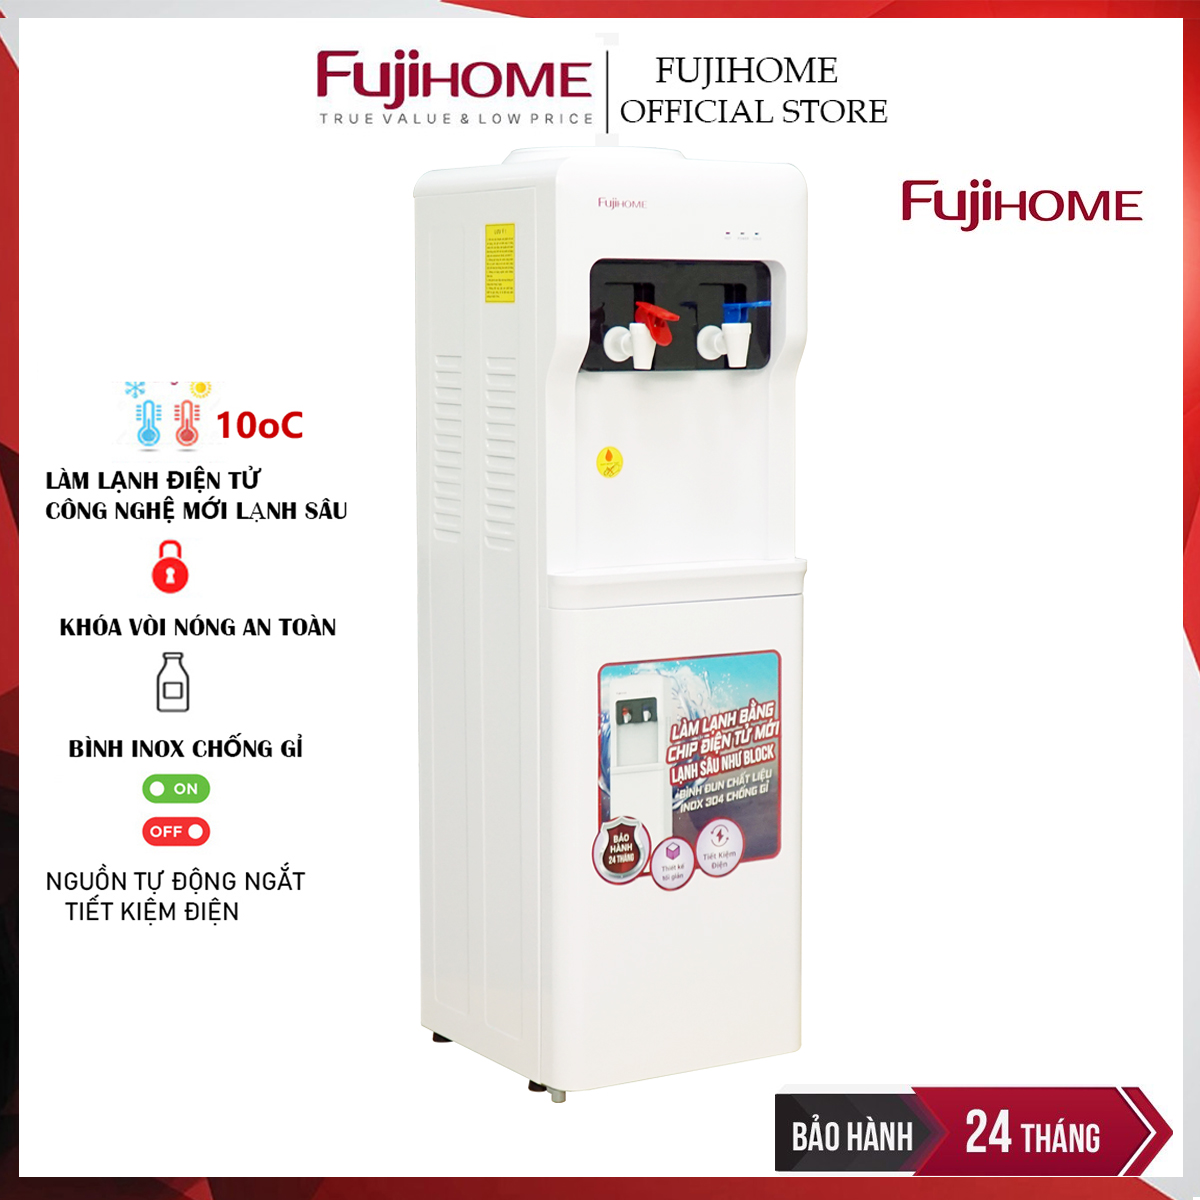 Cây nước nóng lạnh Nhật Bản Fujihome WD5320E khóa vòi nóng, máy nước uống nóng lạnh mini tự ngắt tiết kiệm điện - Hàng Chính hãng